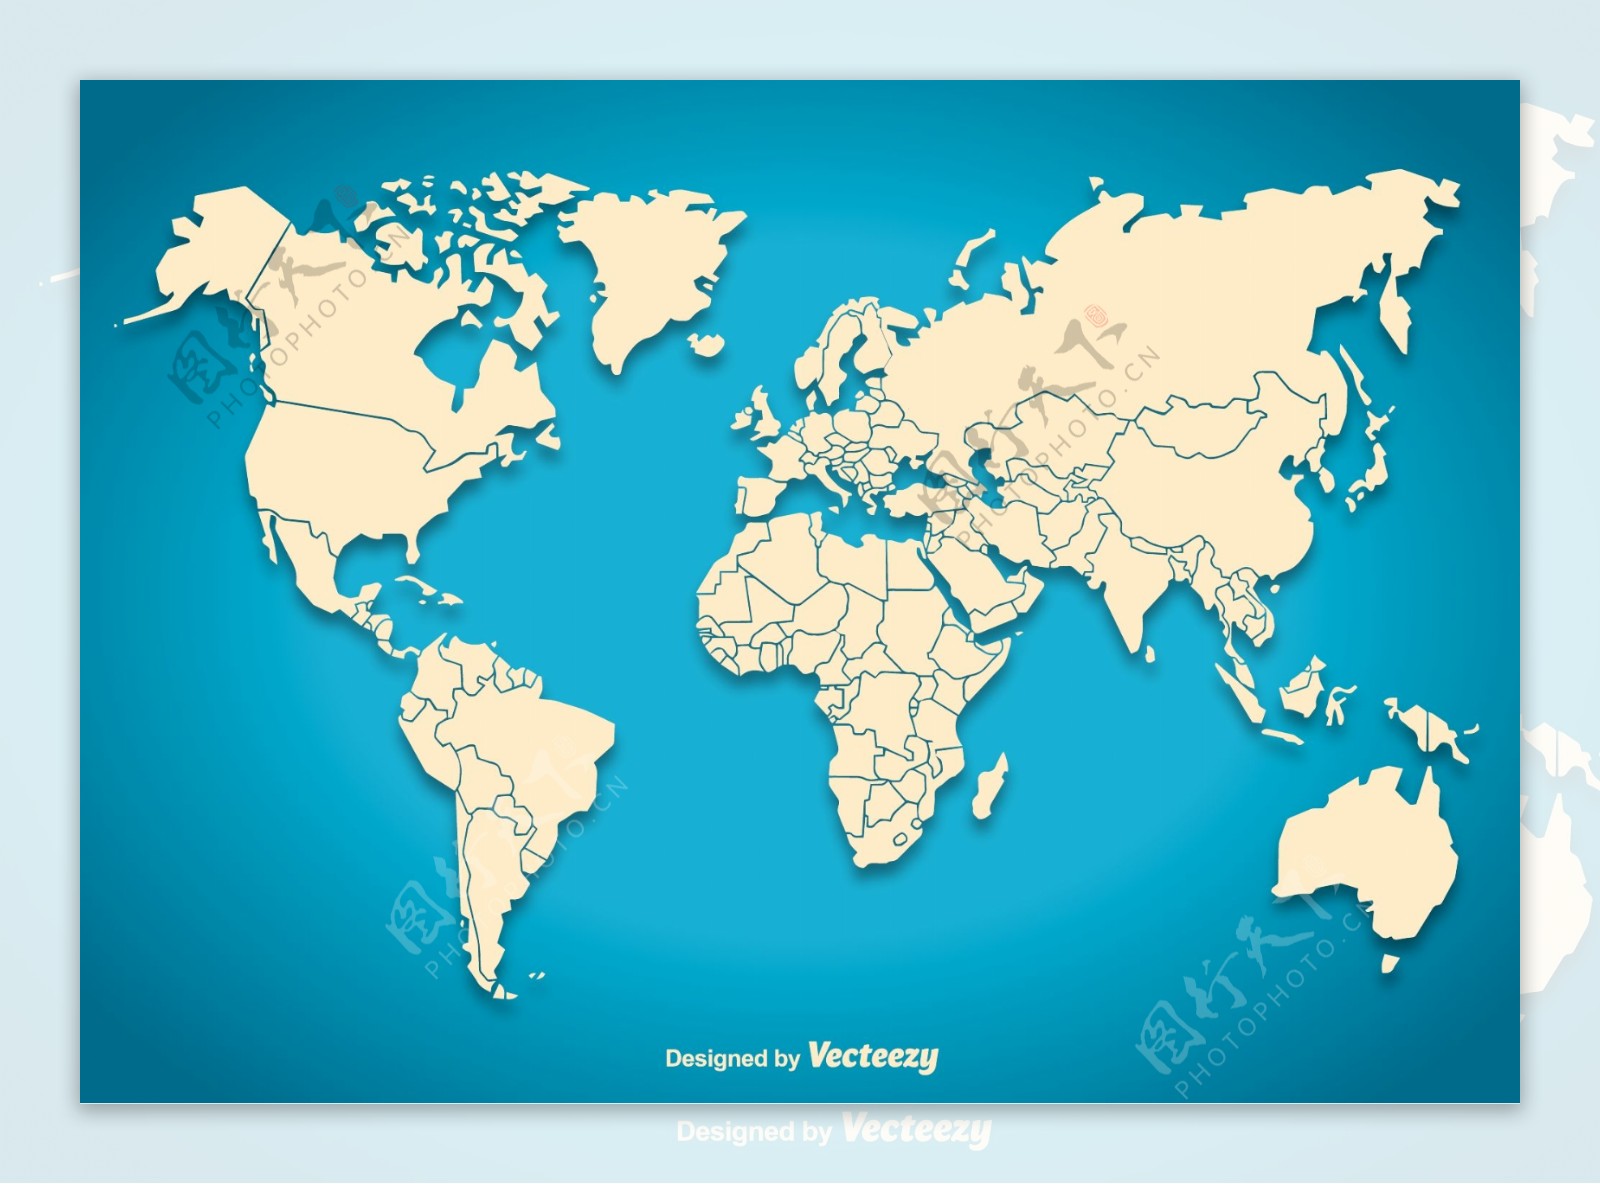 世界政区地图高清全图 - 世界政区地图 - 地理教师网